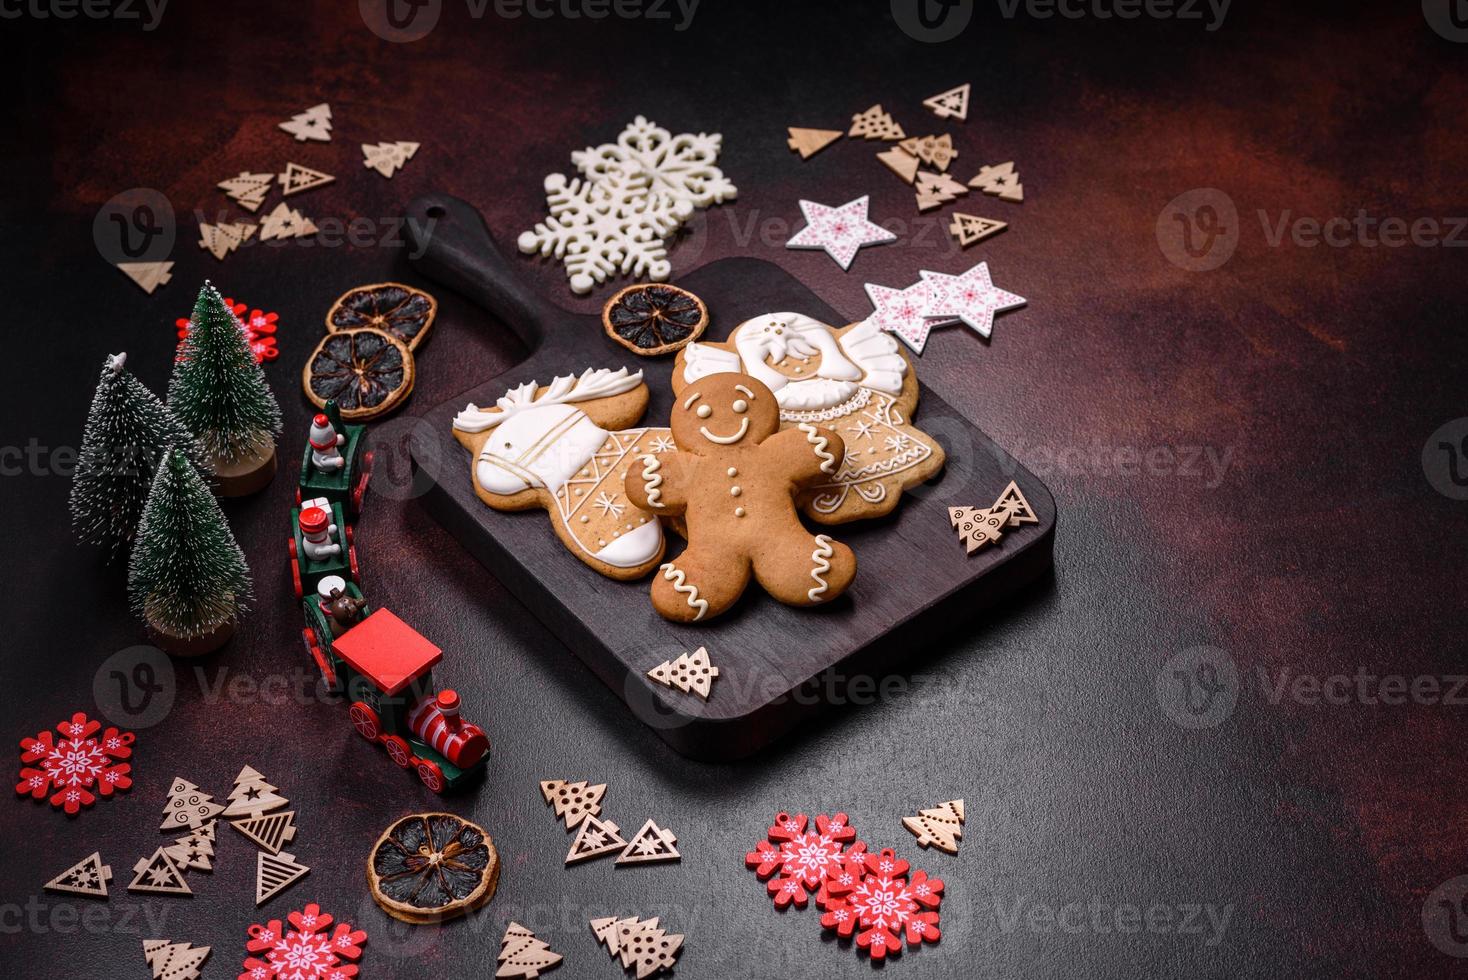 mesa navideña casera decorada con juguetes y panes de jengibre foto